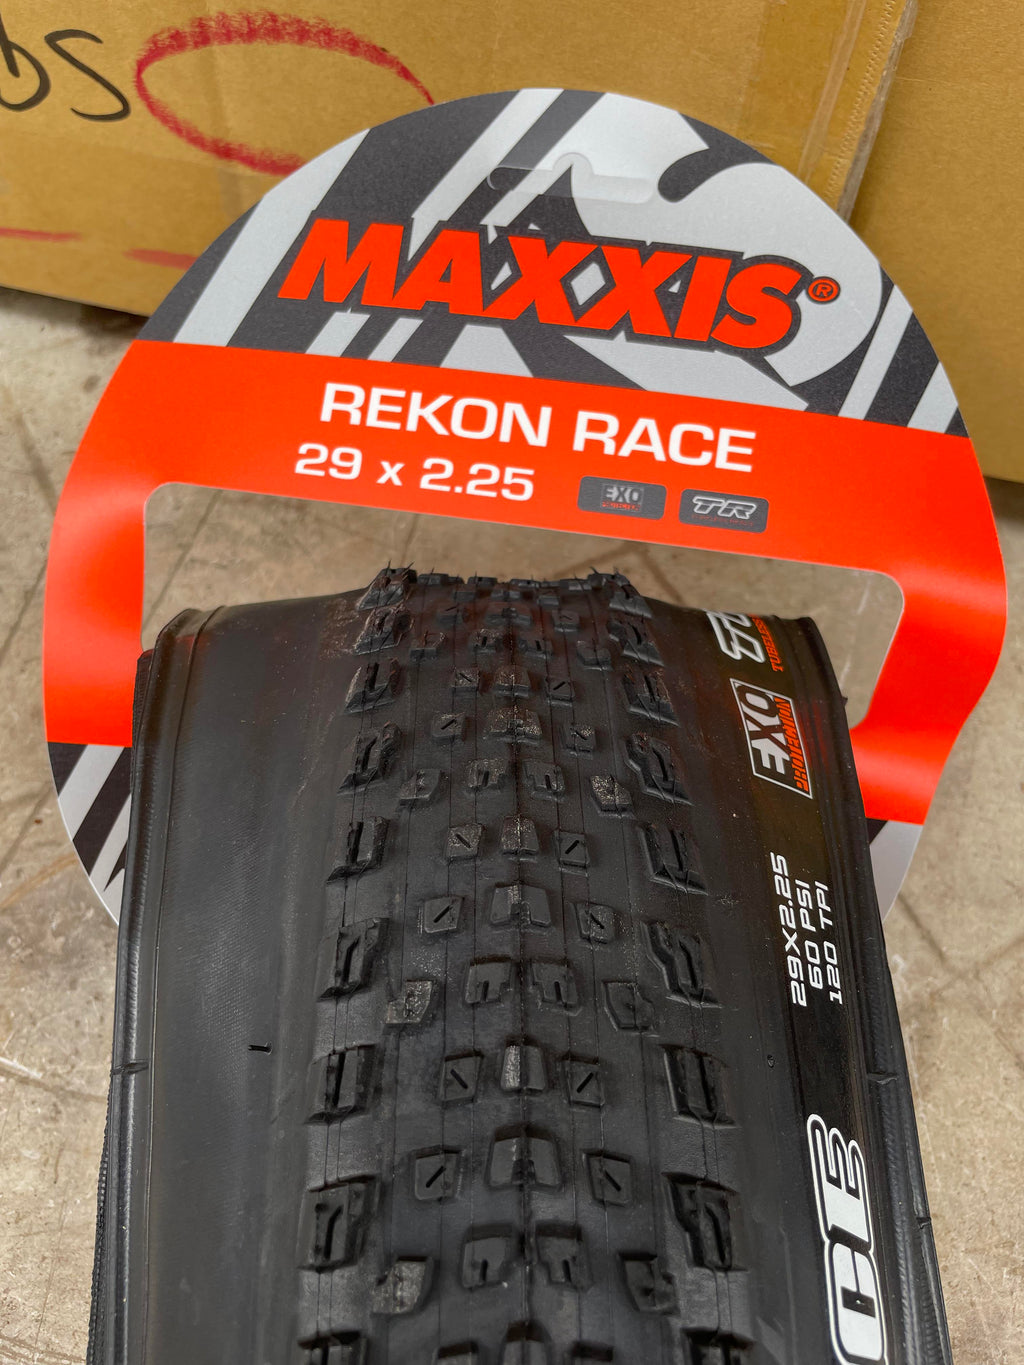 Maxxis Rekon Race 29 120 tpi